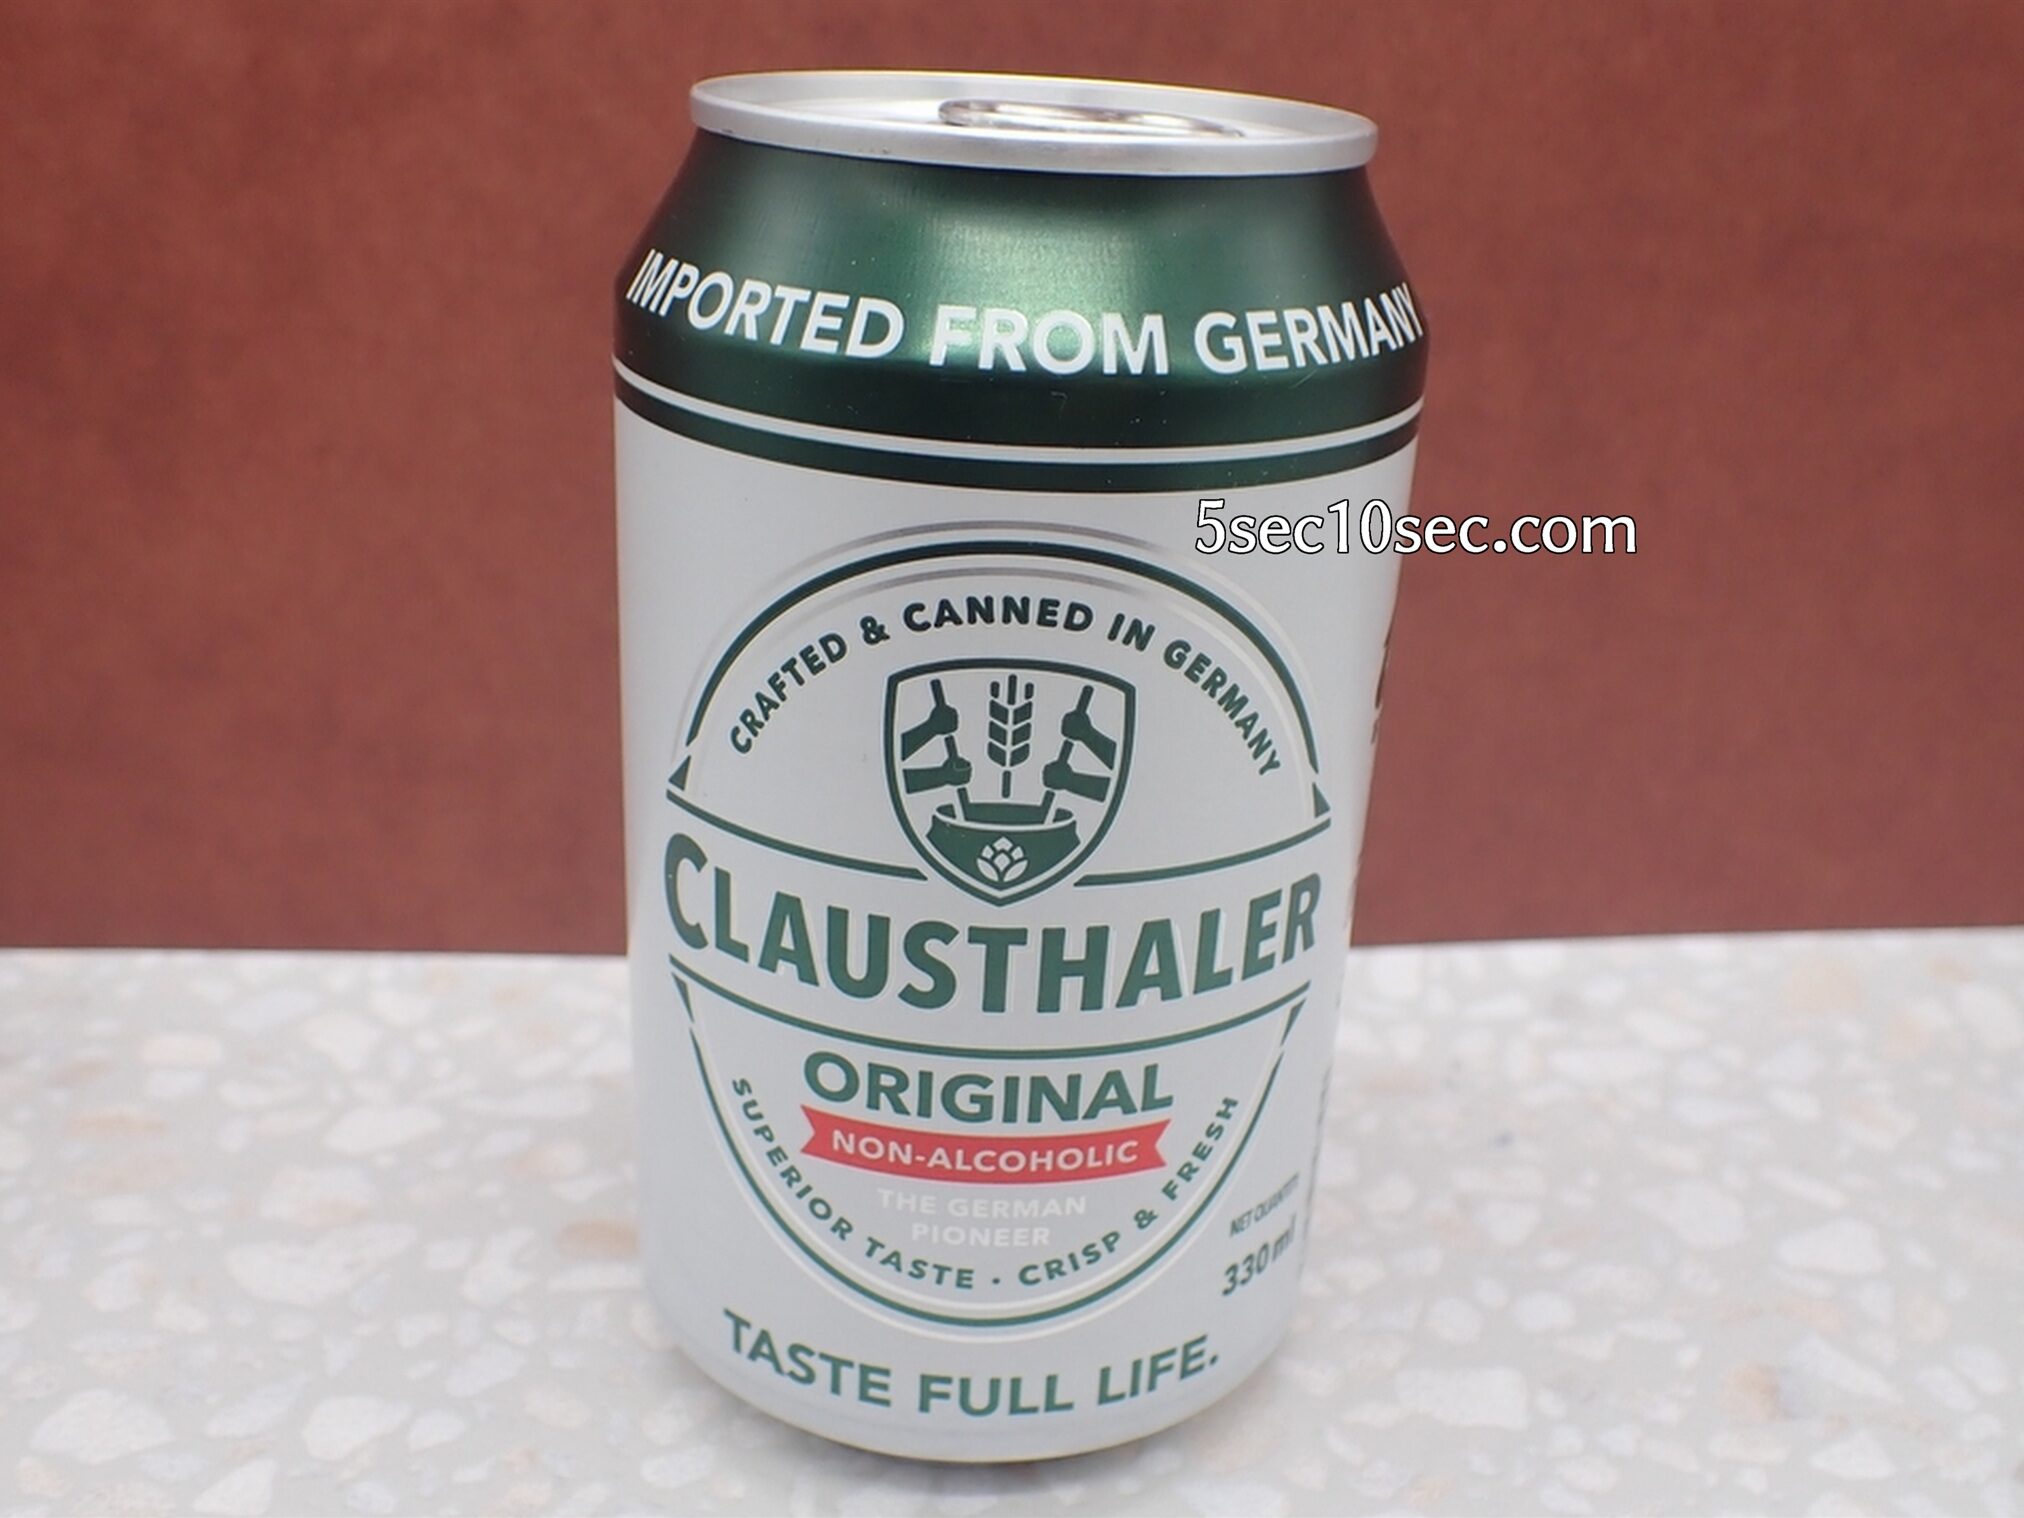 ドイツのノンアルコールビールテイスト飲料 クラウスターラーを飲んでみた感想をブログでレビューしています